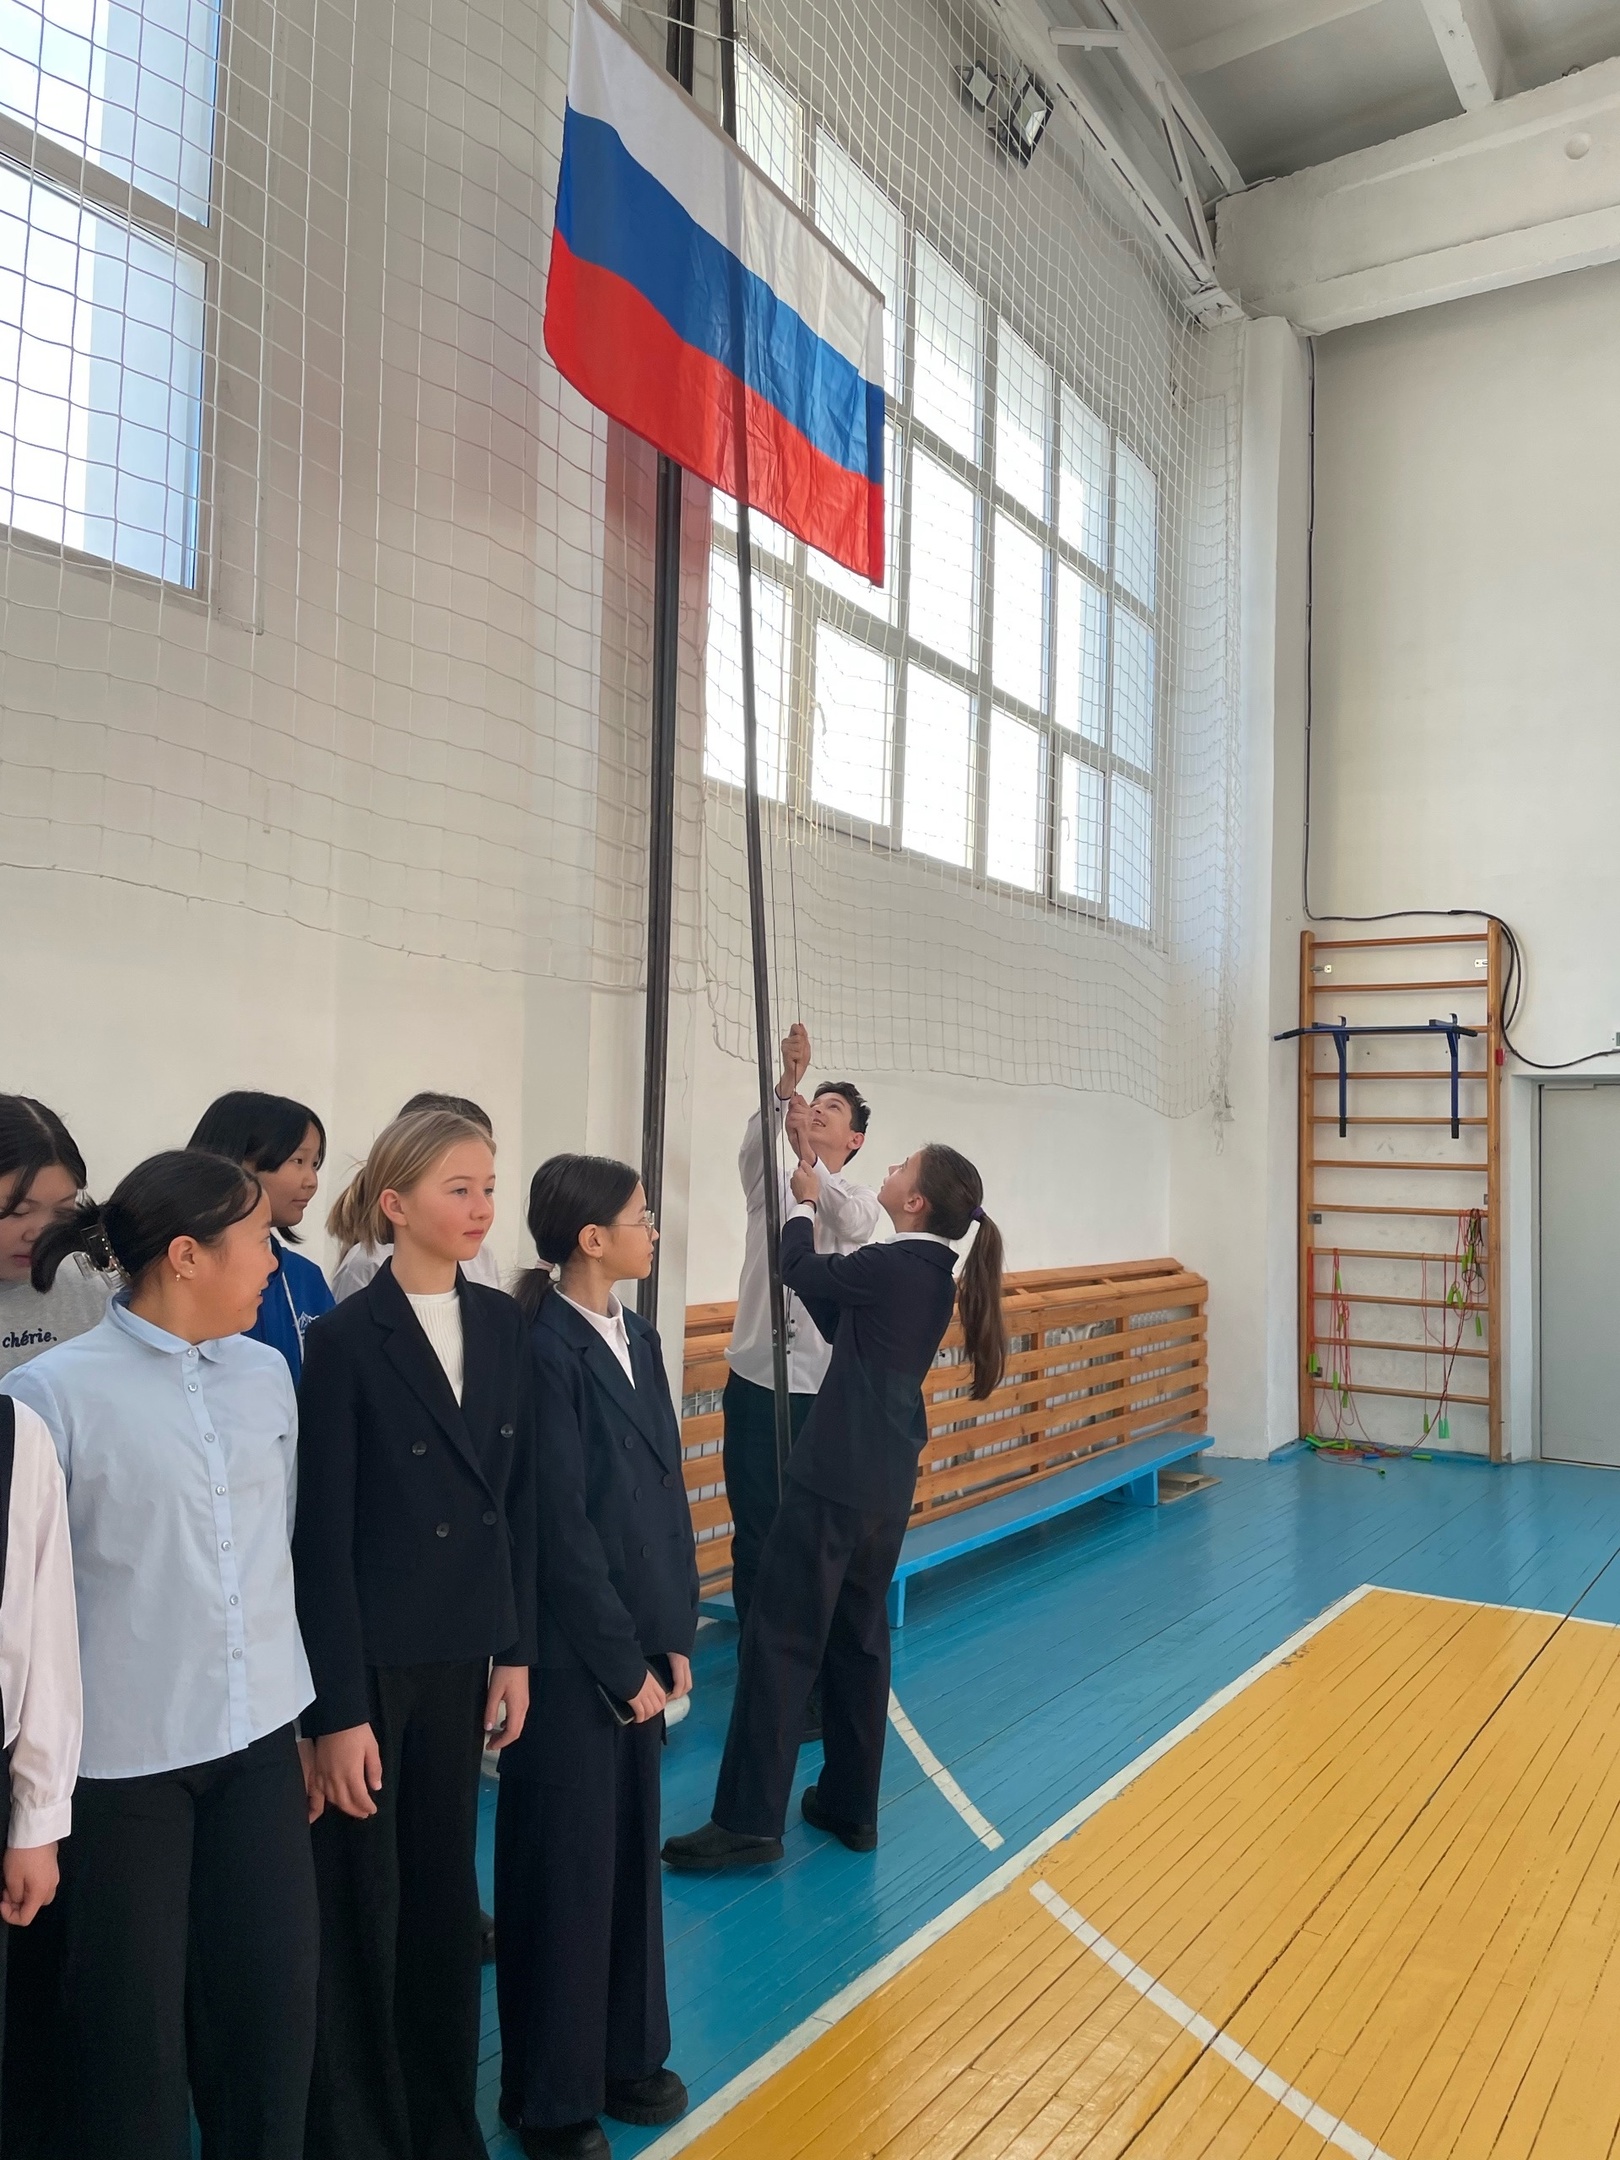 О церемонии поднятия флага Российской Федерации.